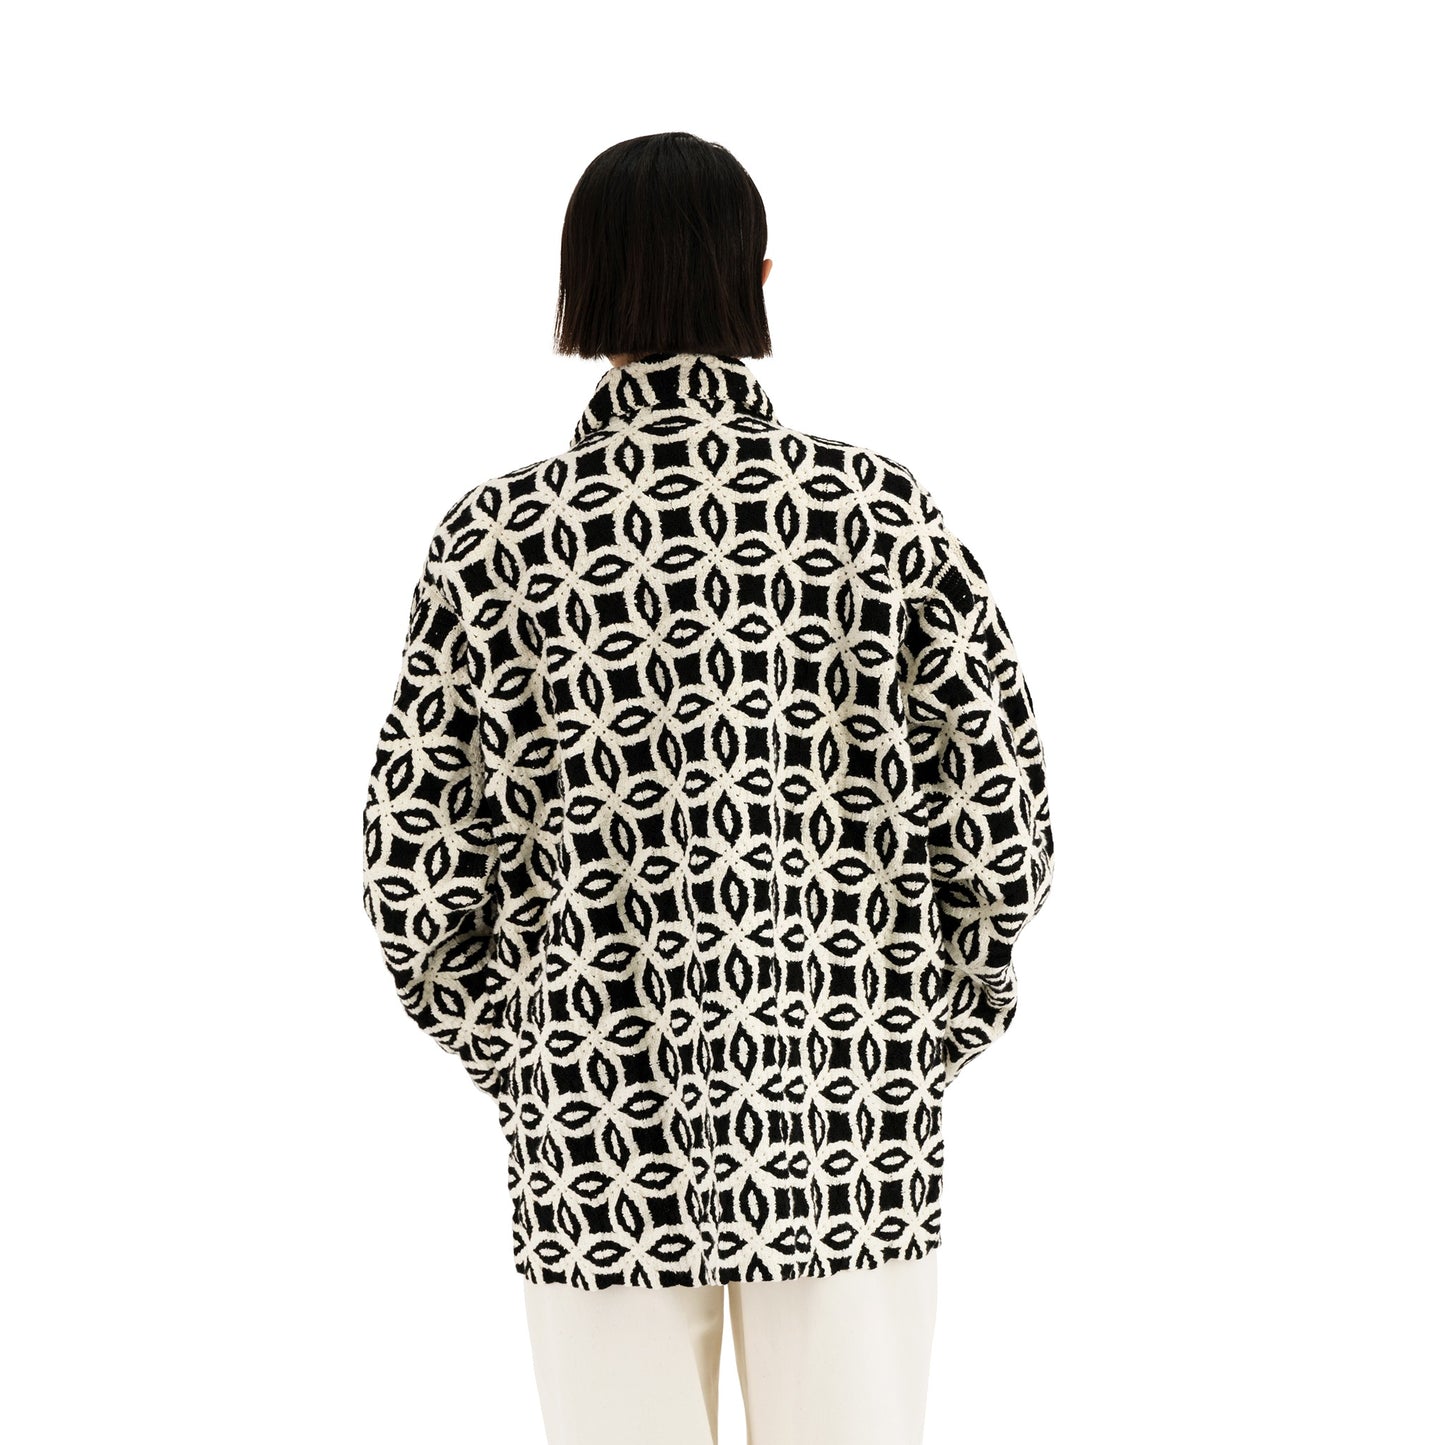 Bill Unlined Meta Crochet Workwear Jacket Black&White